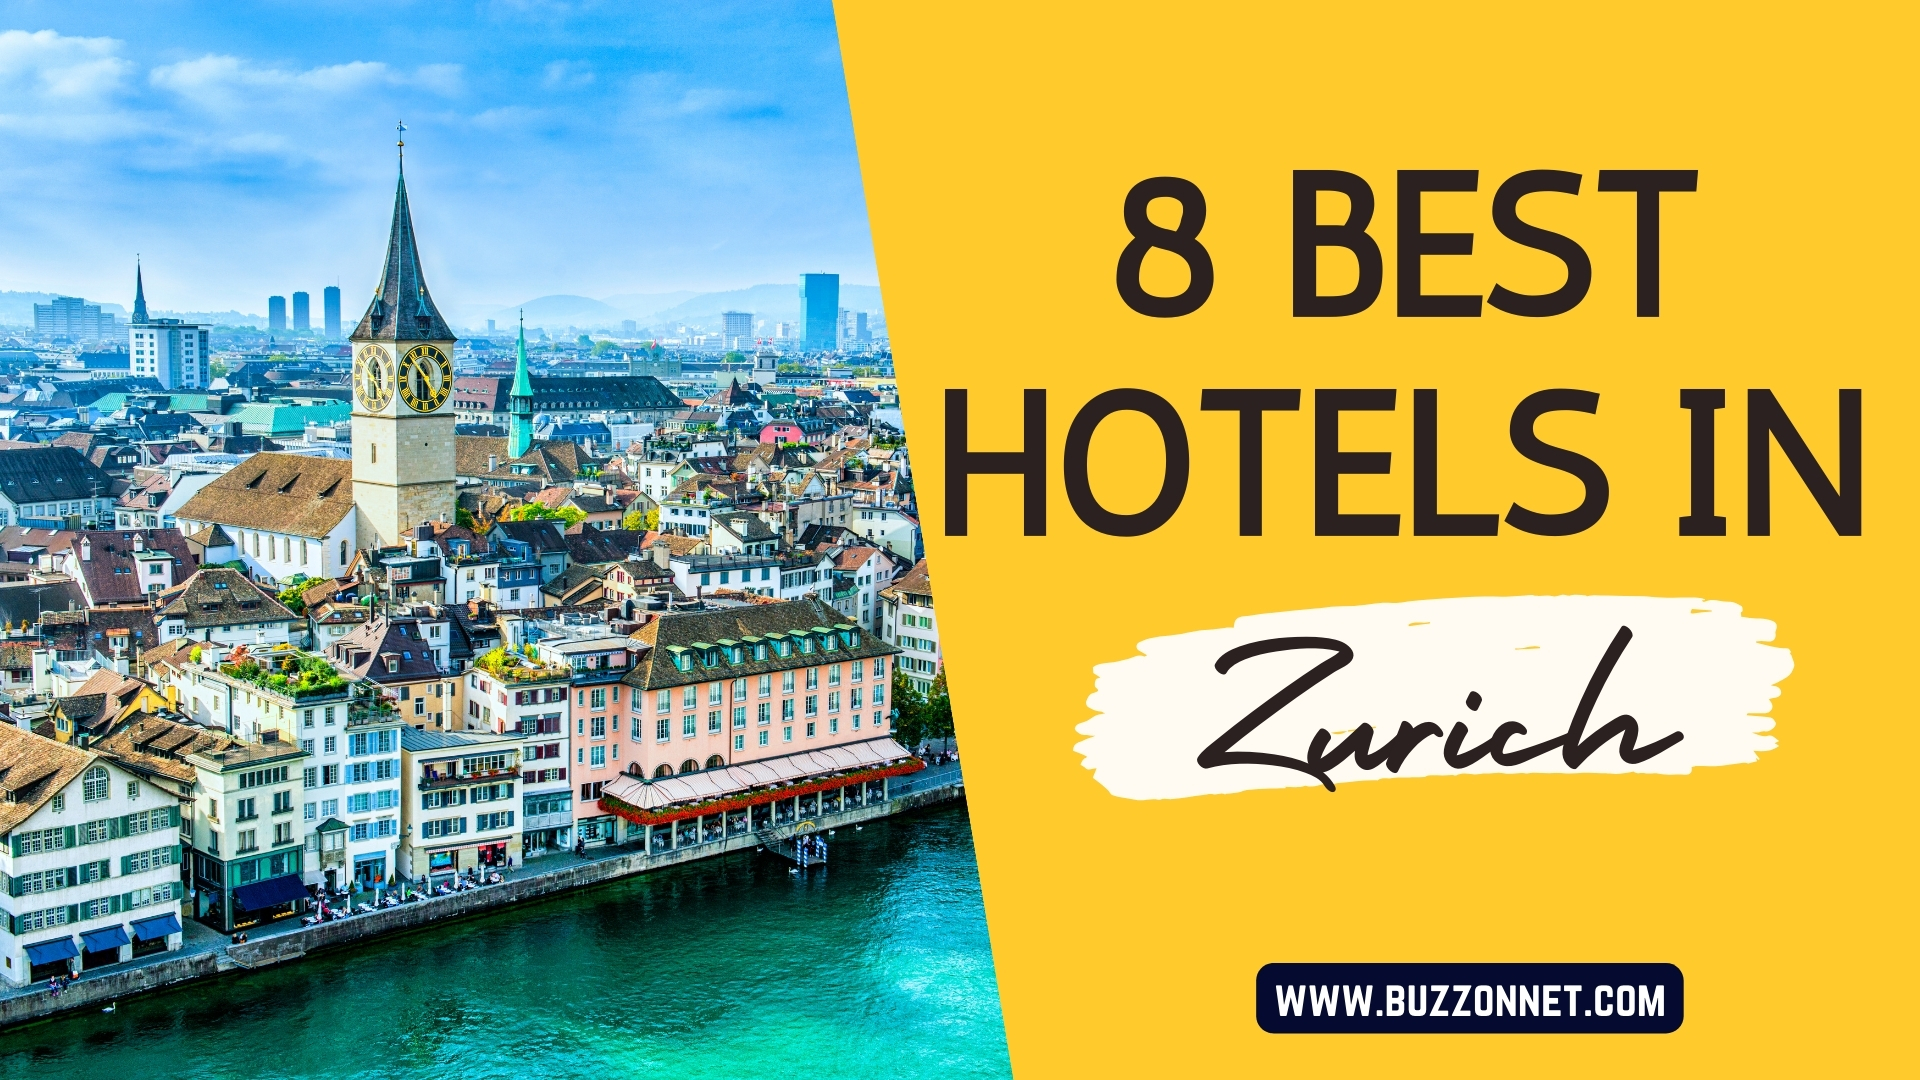 8 Best Hotels In Zurich, Buzz IOn Net